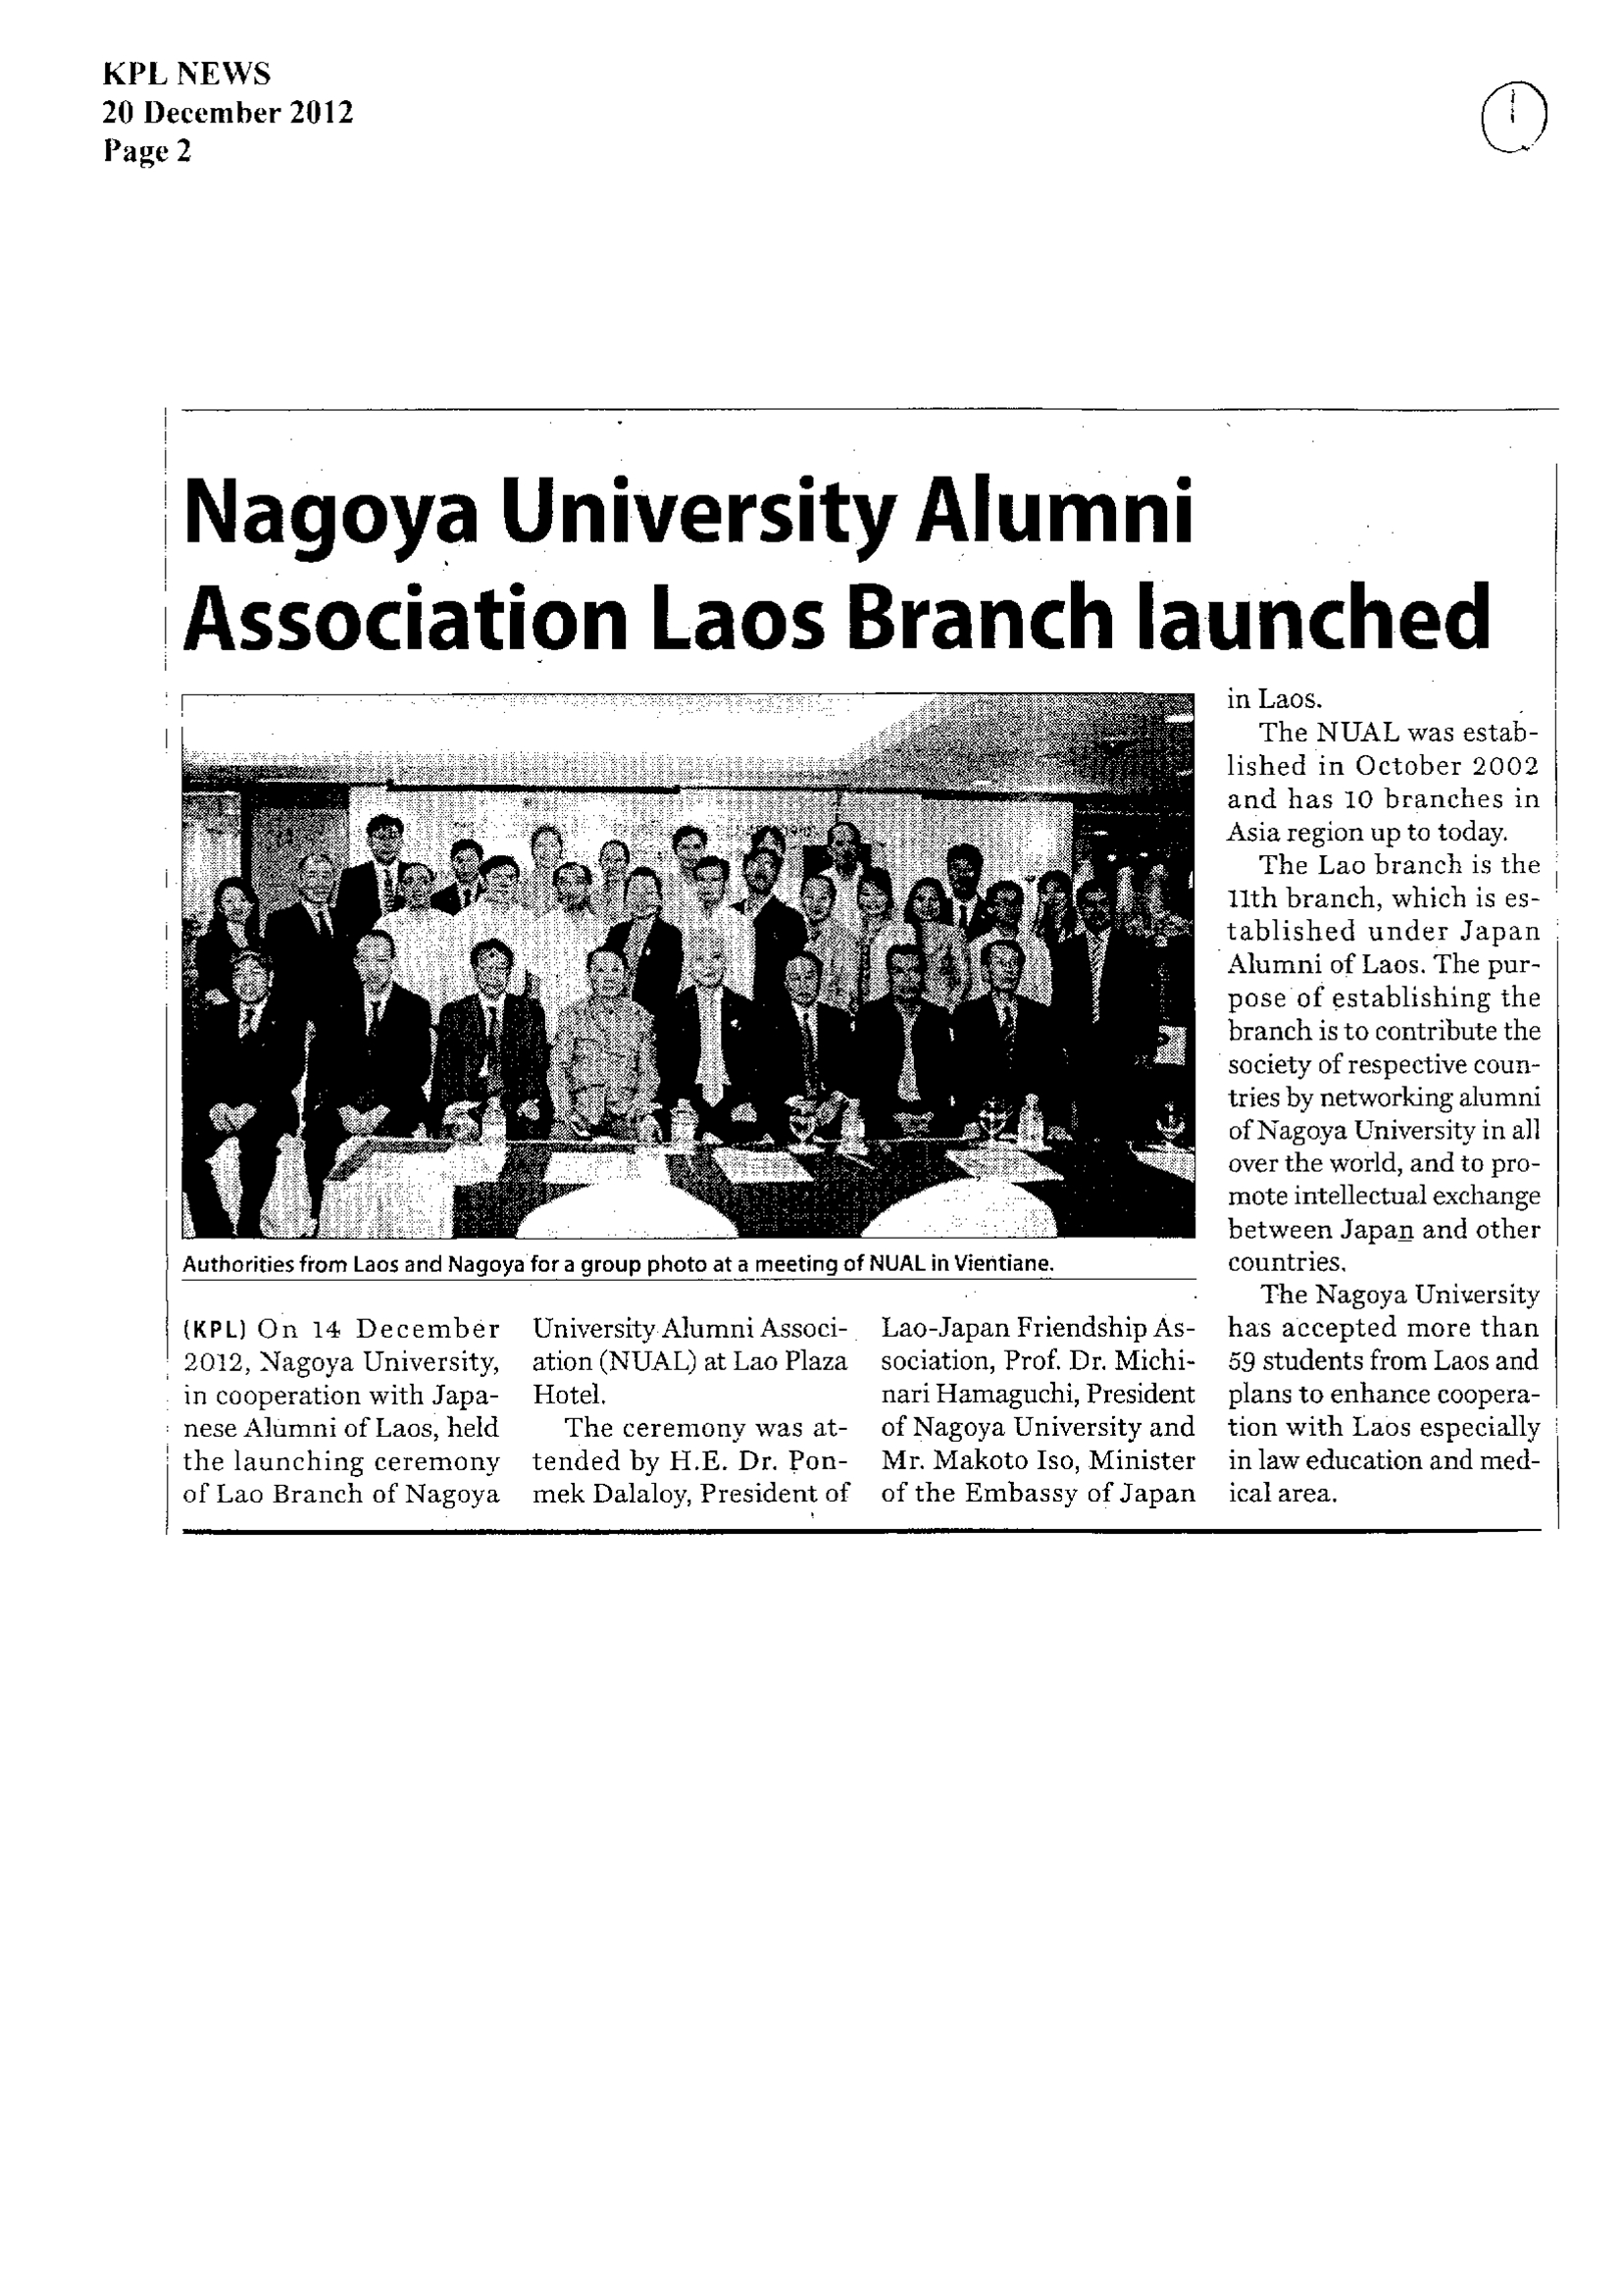 Local Newspaper “KPL NEWS” (December 20, 2012)